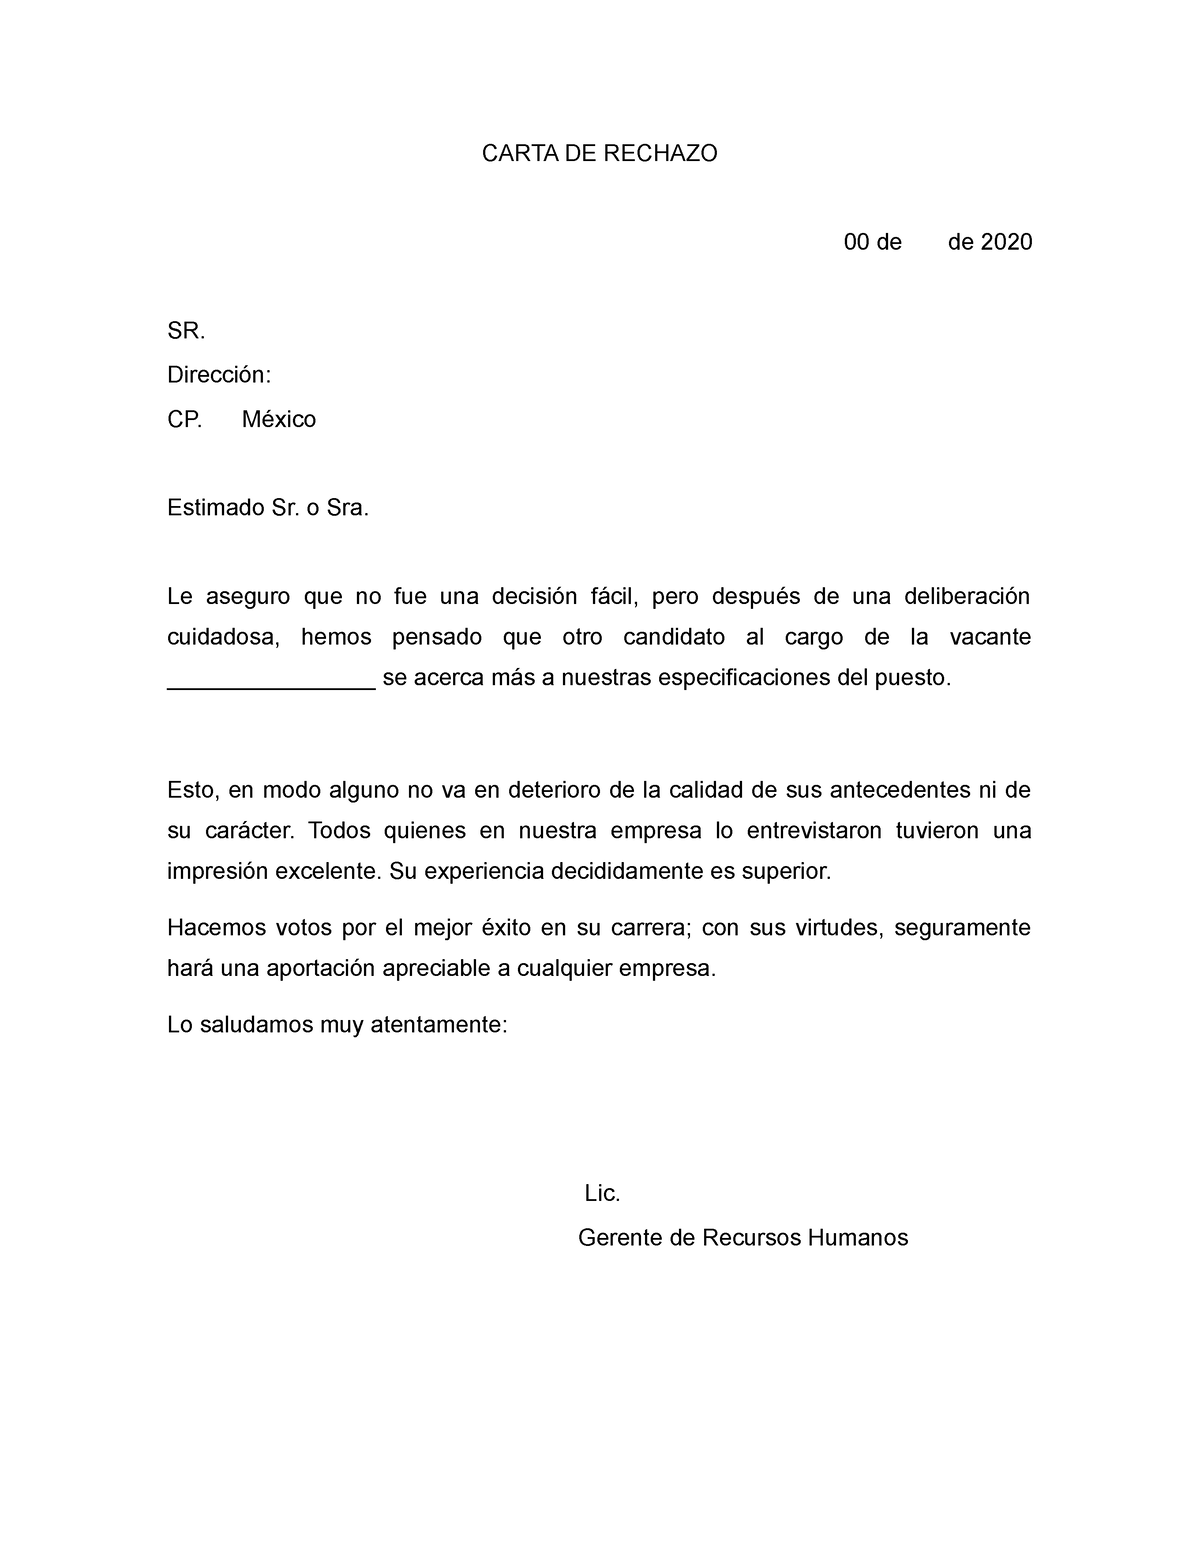 Carta De Rechazo Laboral Carta De Rechazo 00 De De 2020 Sr Dirección Cp México Estimado Sr 2089